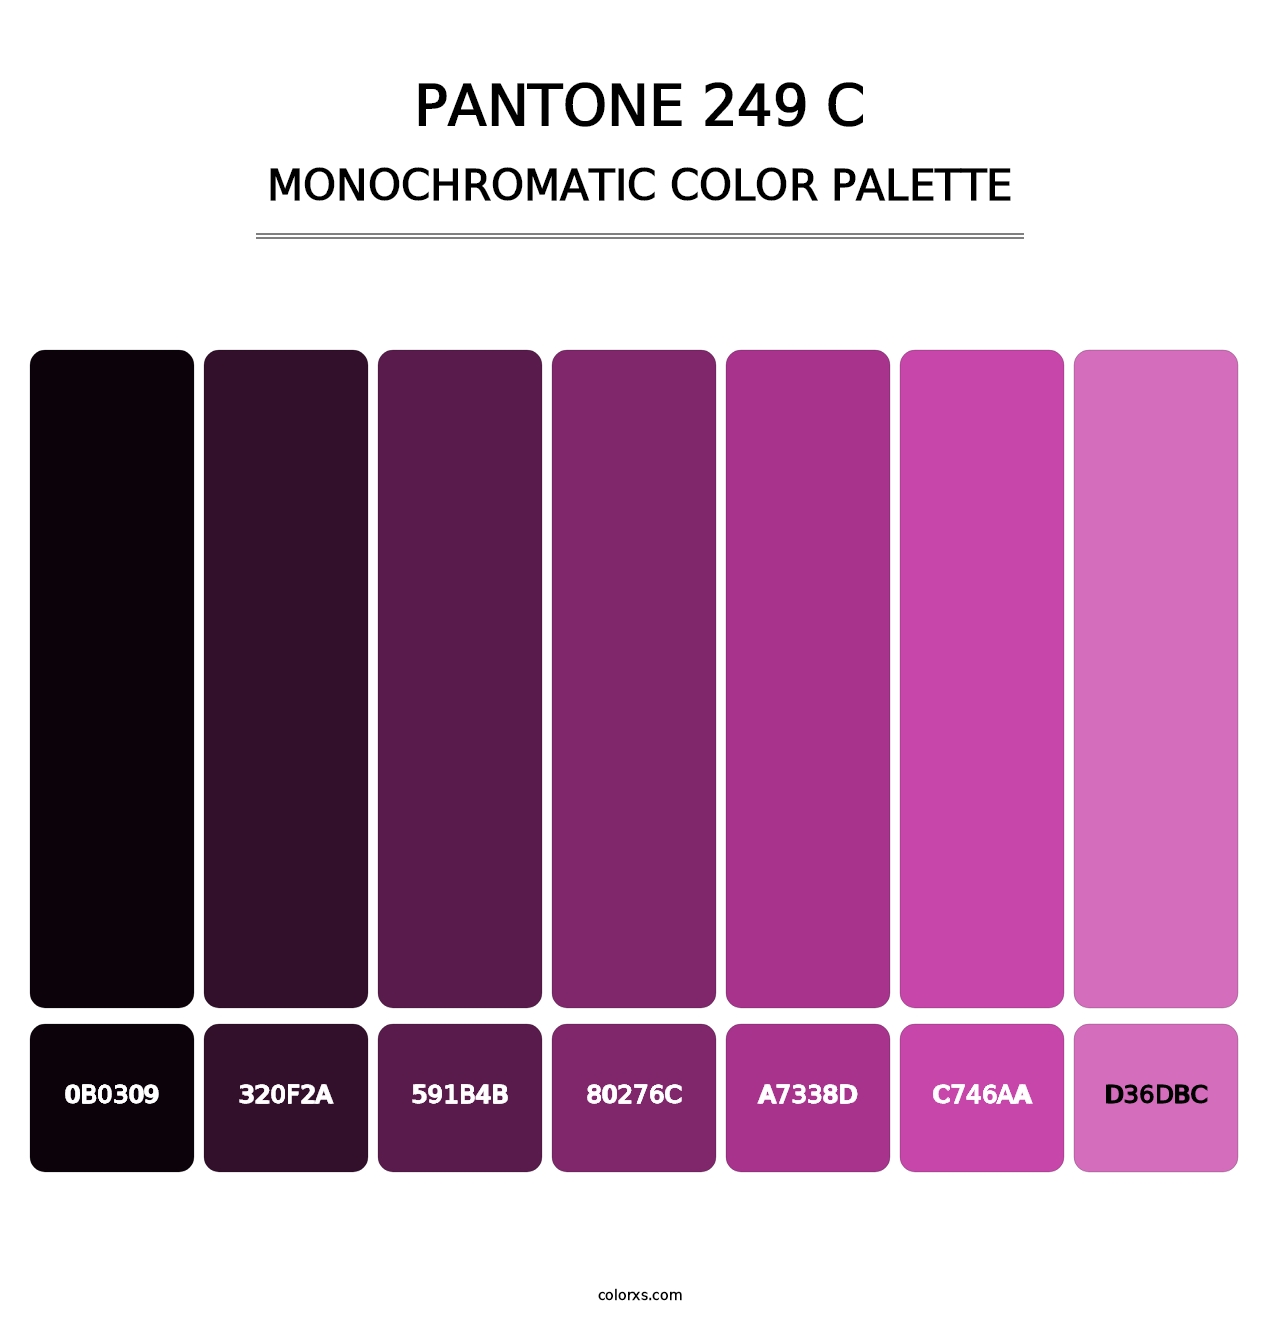 PANTONE 249 C - Monochromatic Color Palette